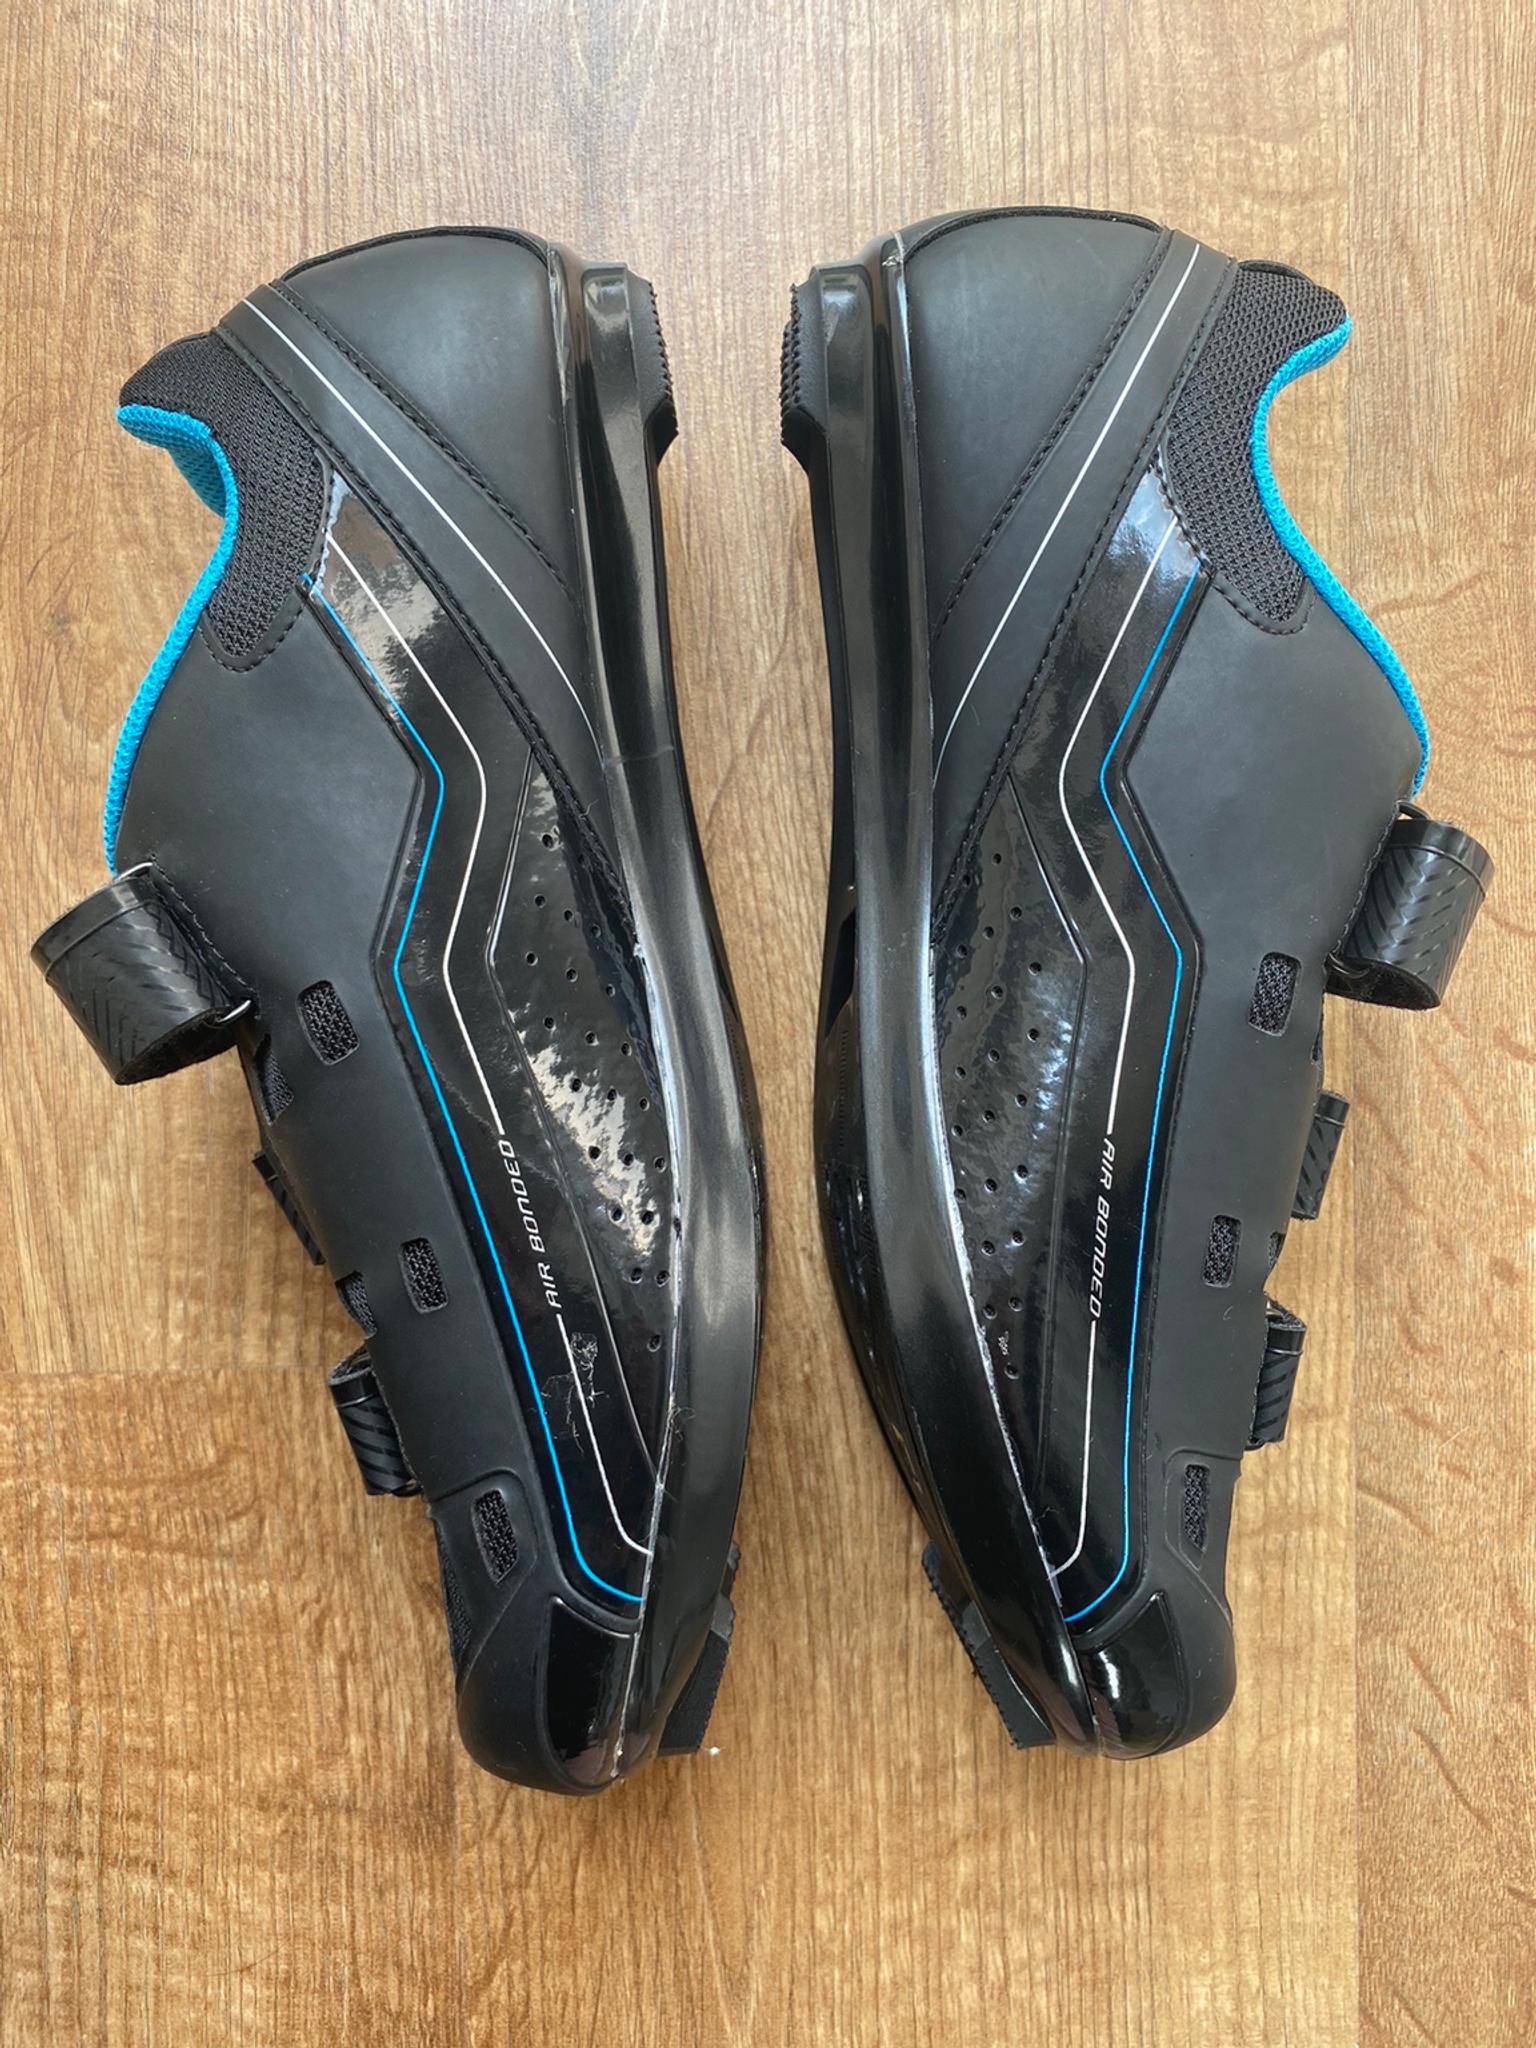 louis garneau jade cycling shoes